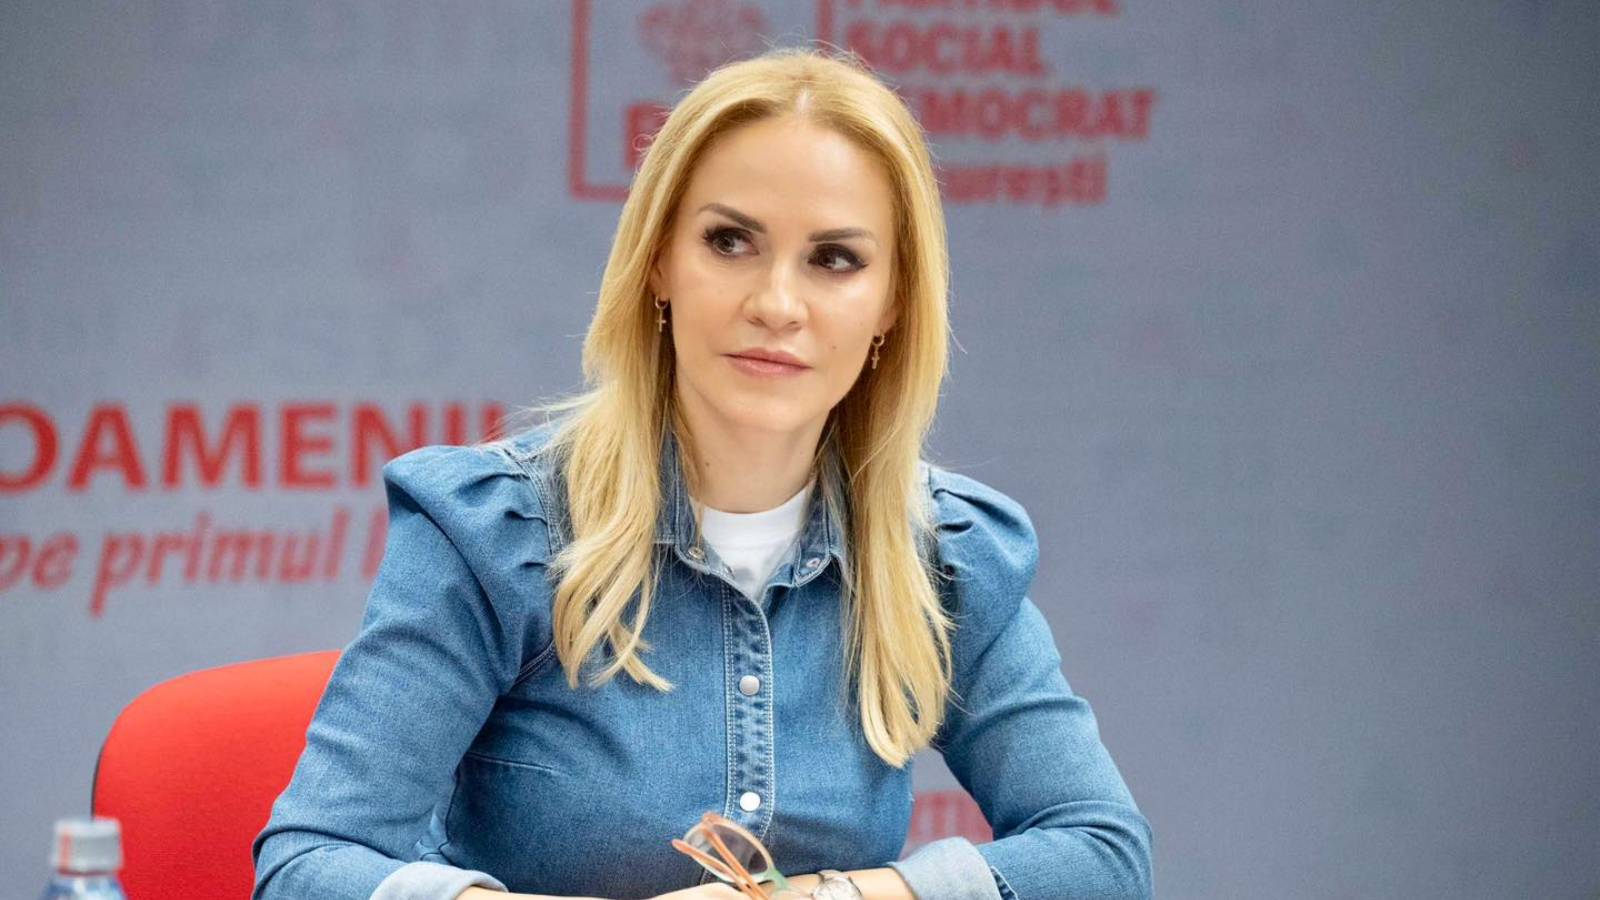 Gabriela Firea Officielle meddelelser SIDSTE MINUTE Betegnelse PSD-kandidat Bukarest Rådhus